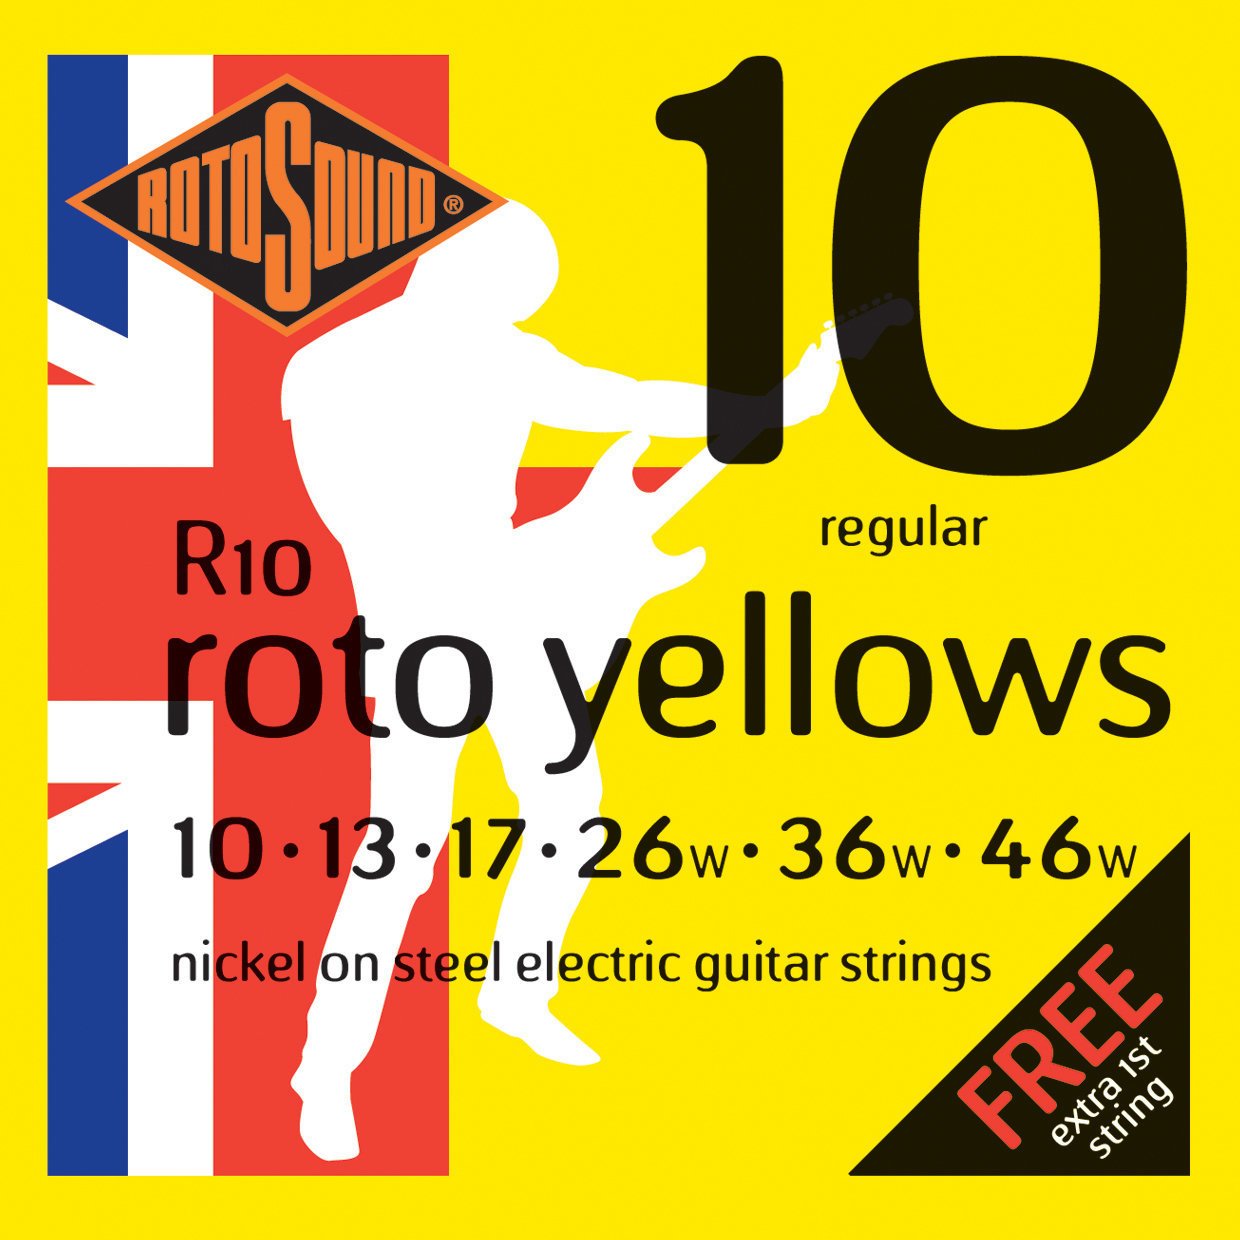 Struny pro elektrickou kytaru Rotosound R10